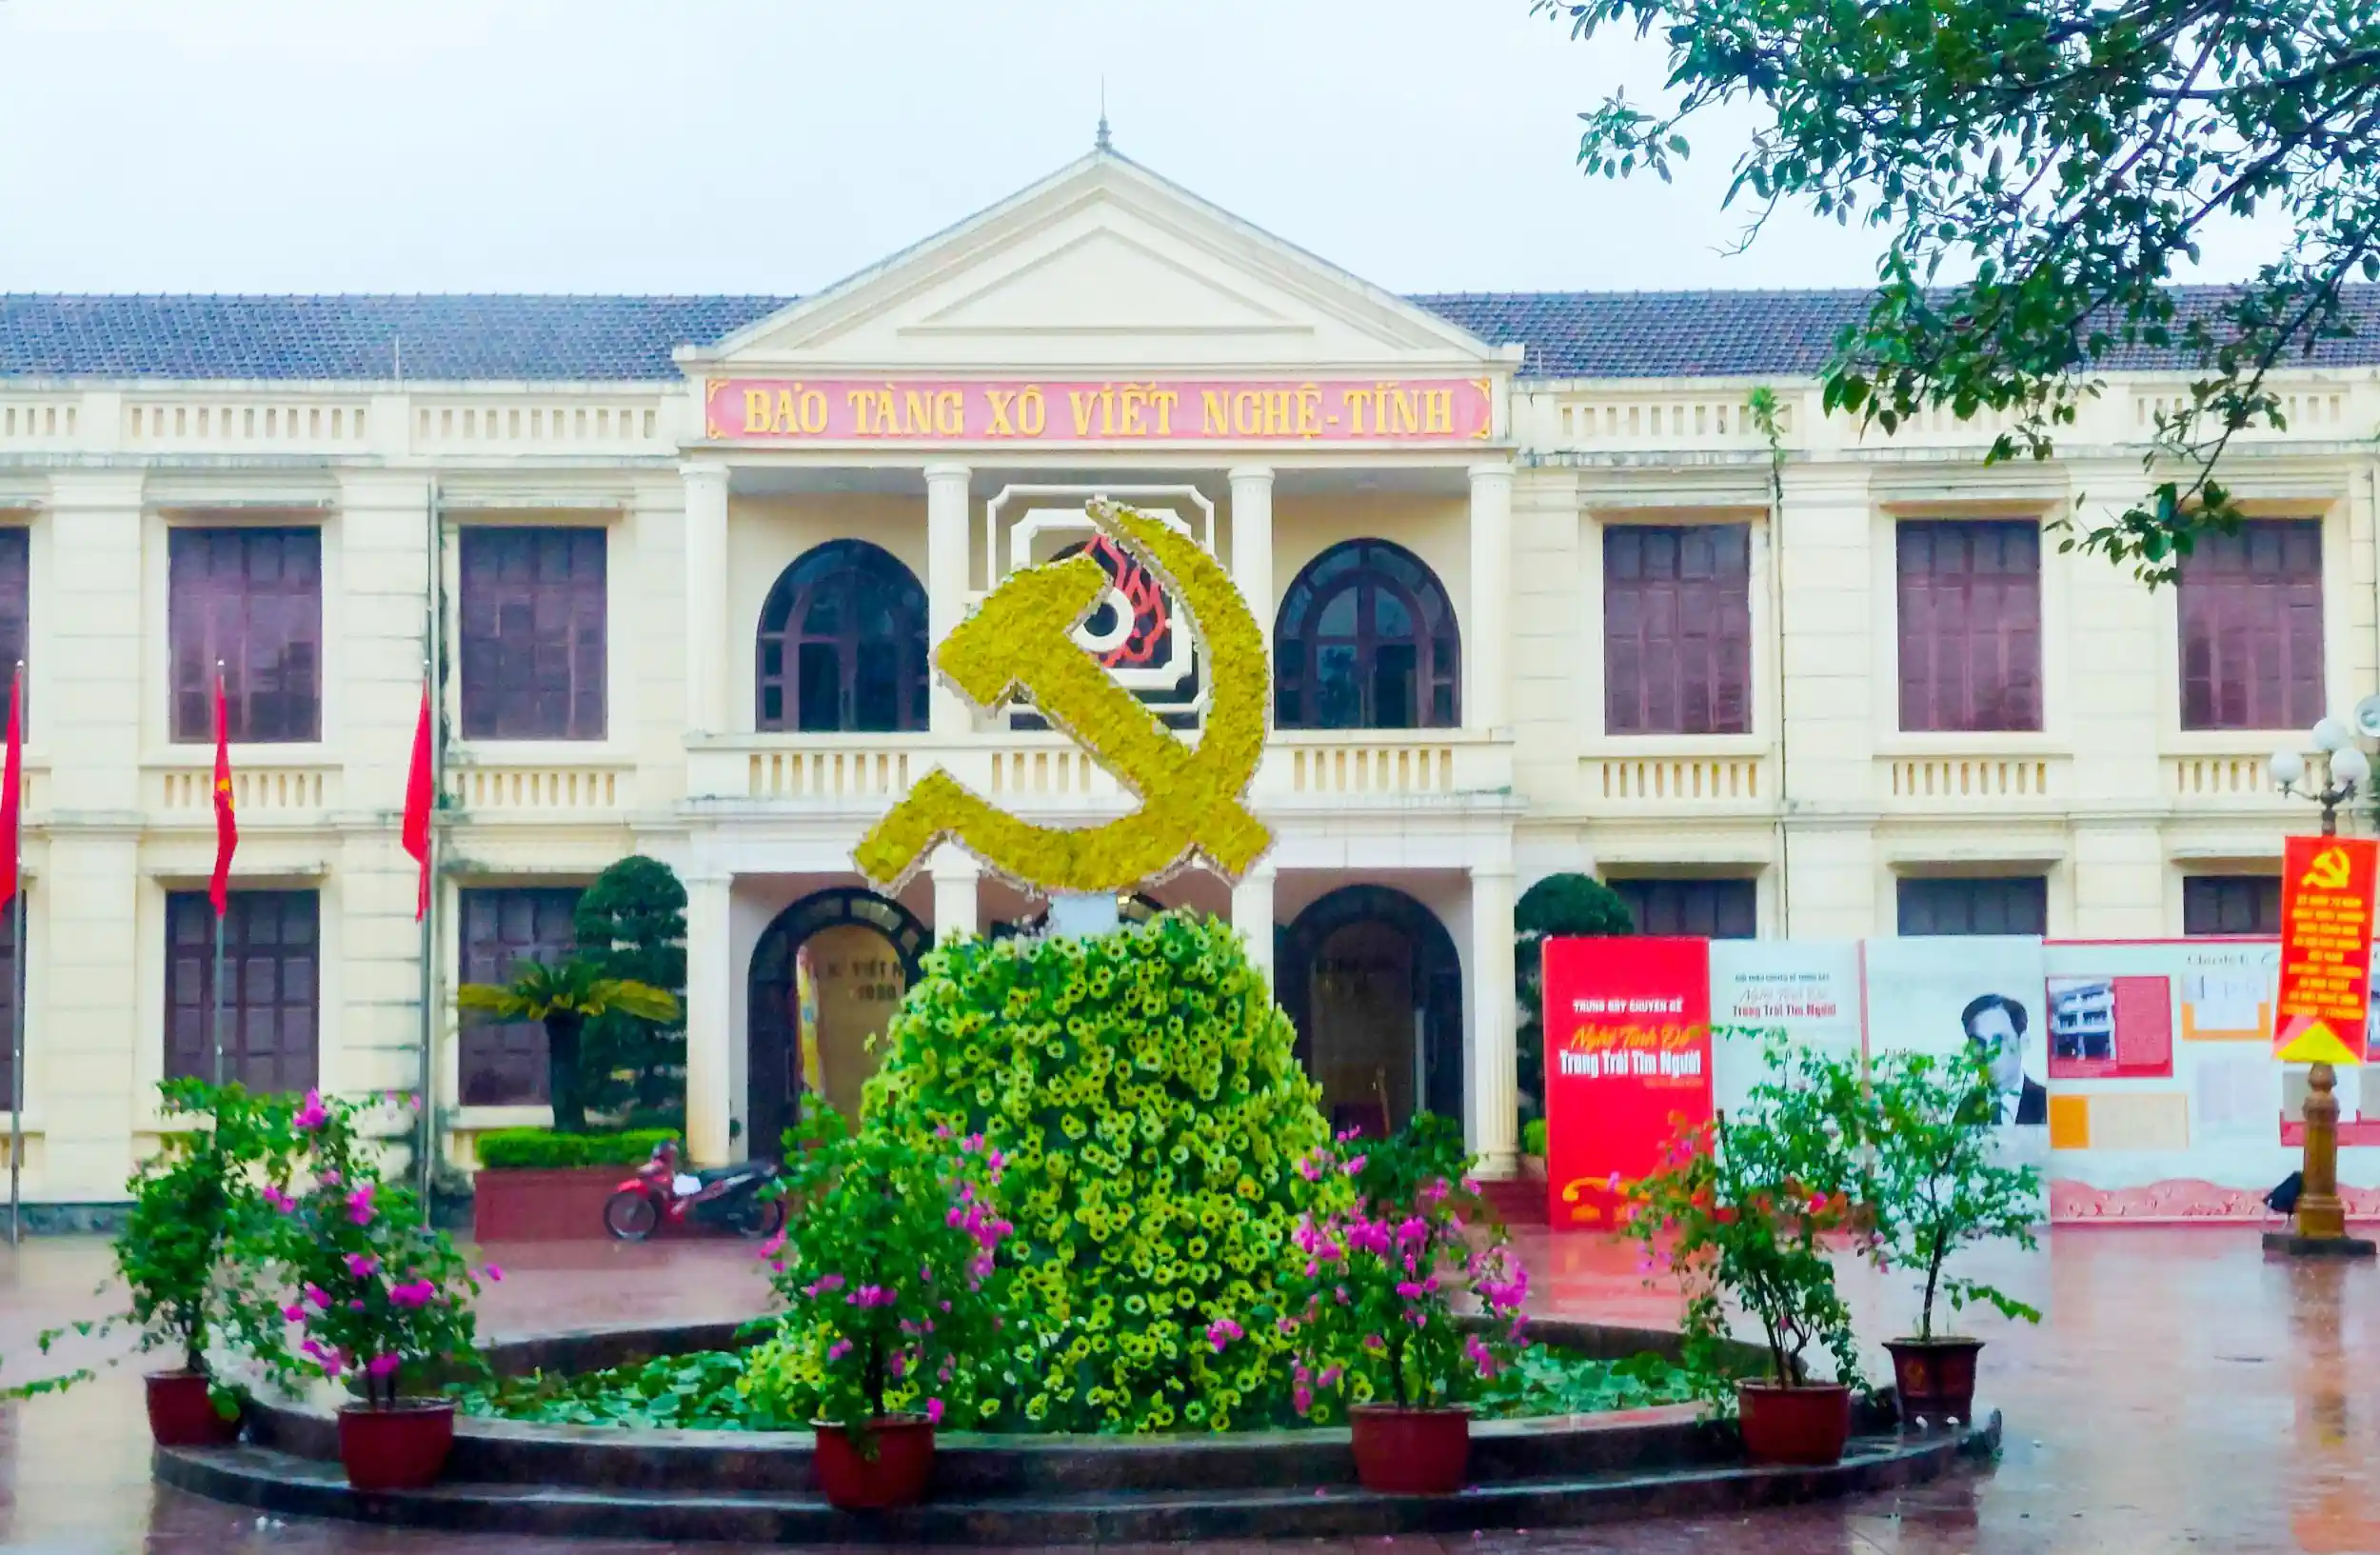 Bảo tàng Xô Viết Nghệ Tĩnh ở TP Vinh, tỉnh Nghệ An. Ảnh: DUY KHÔI